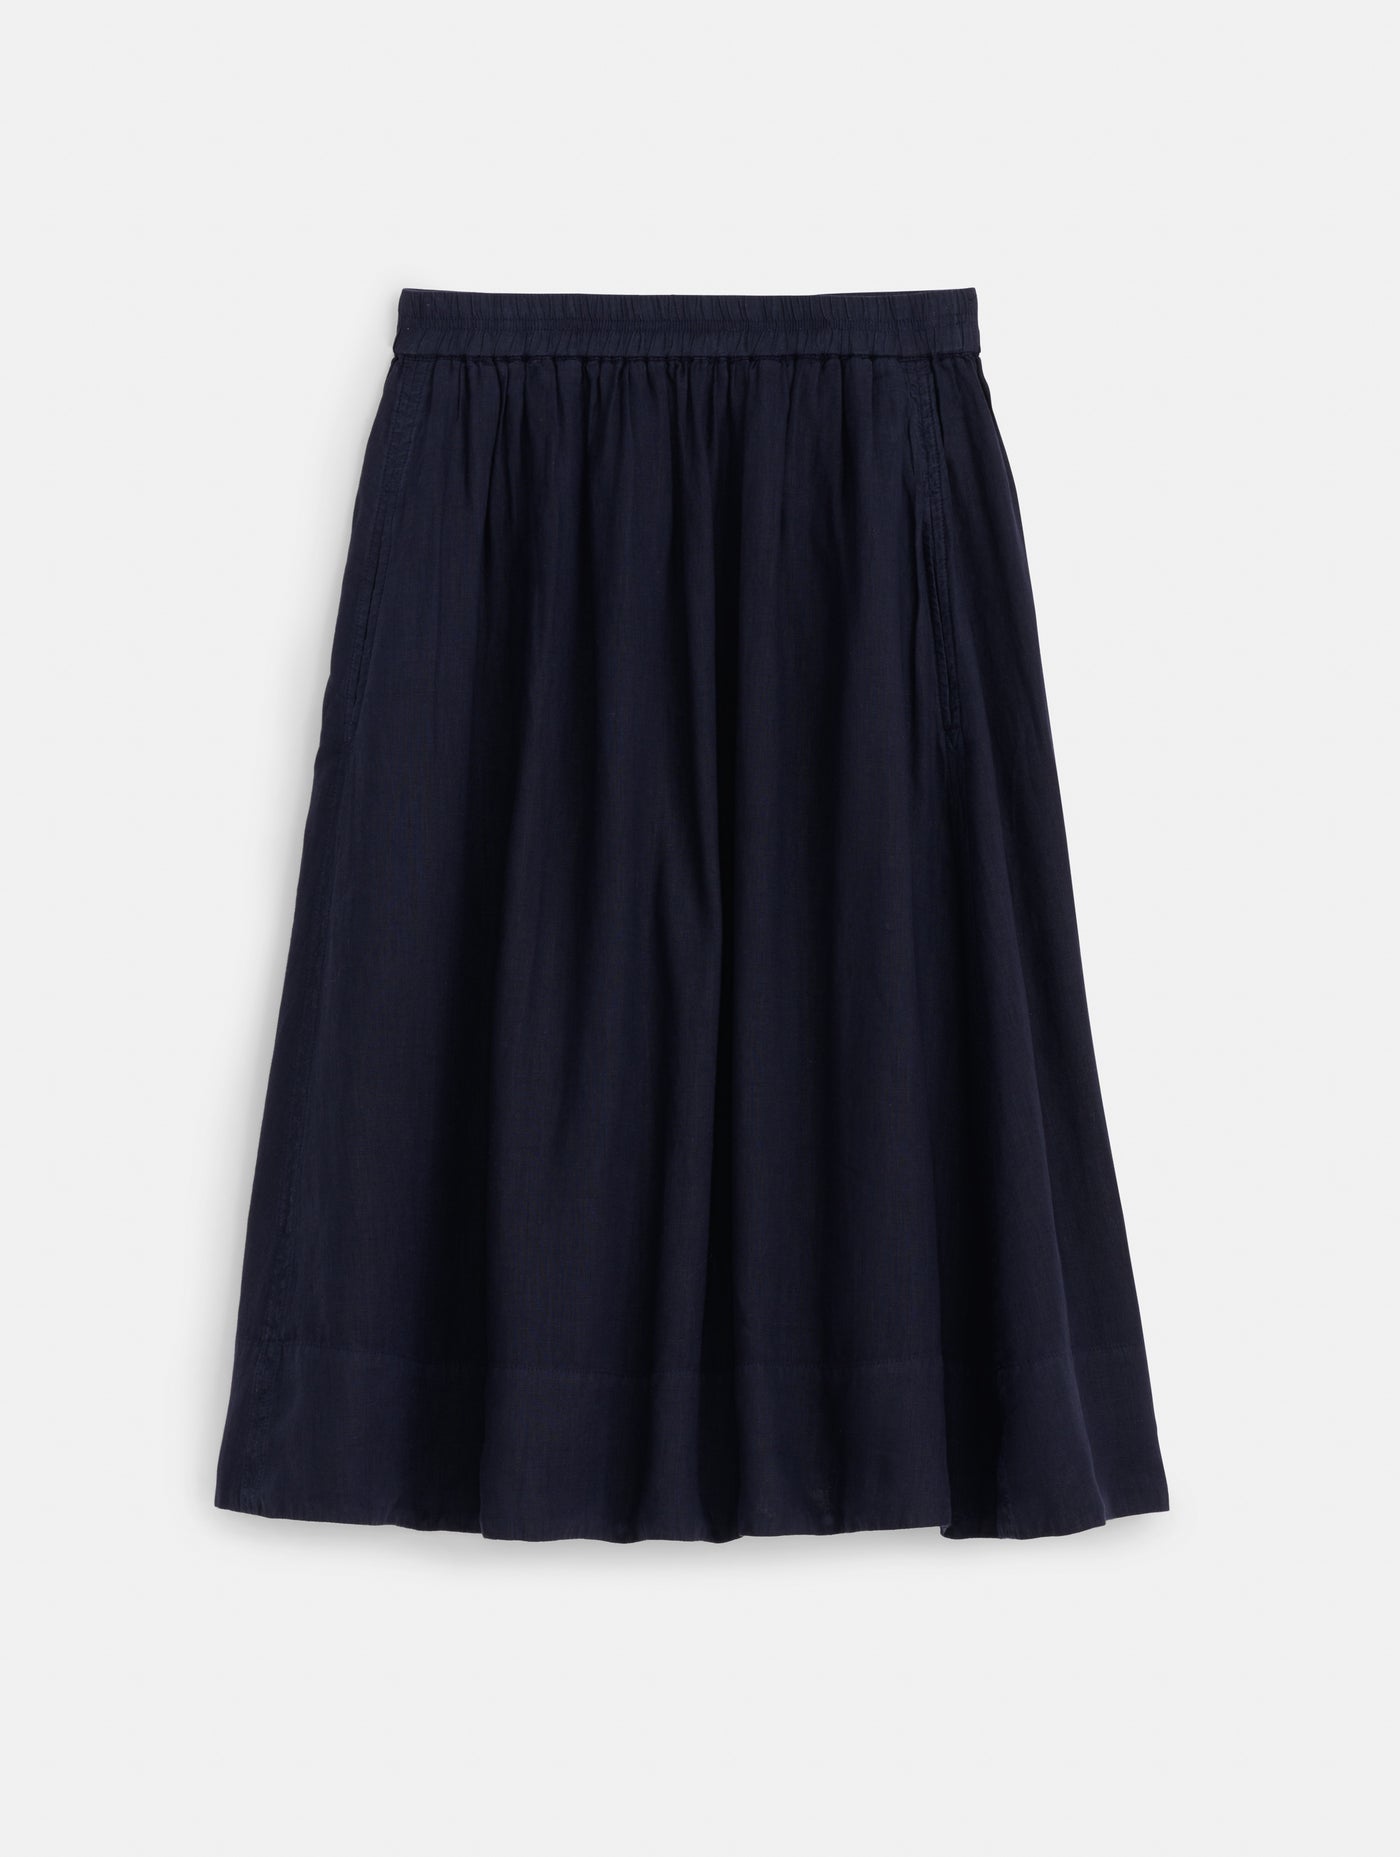 Standard Skirt in Linen